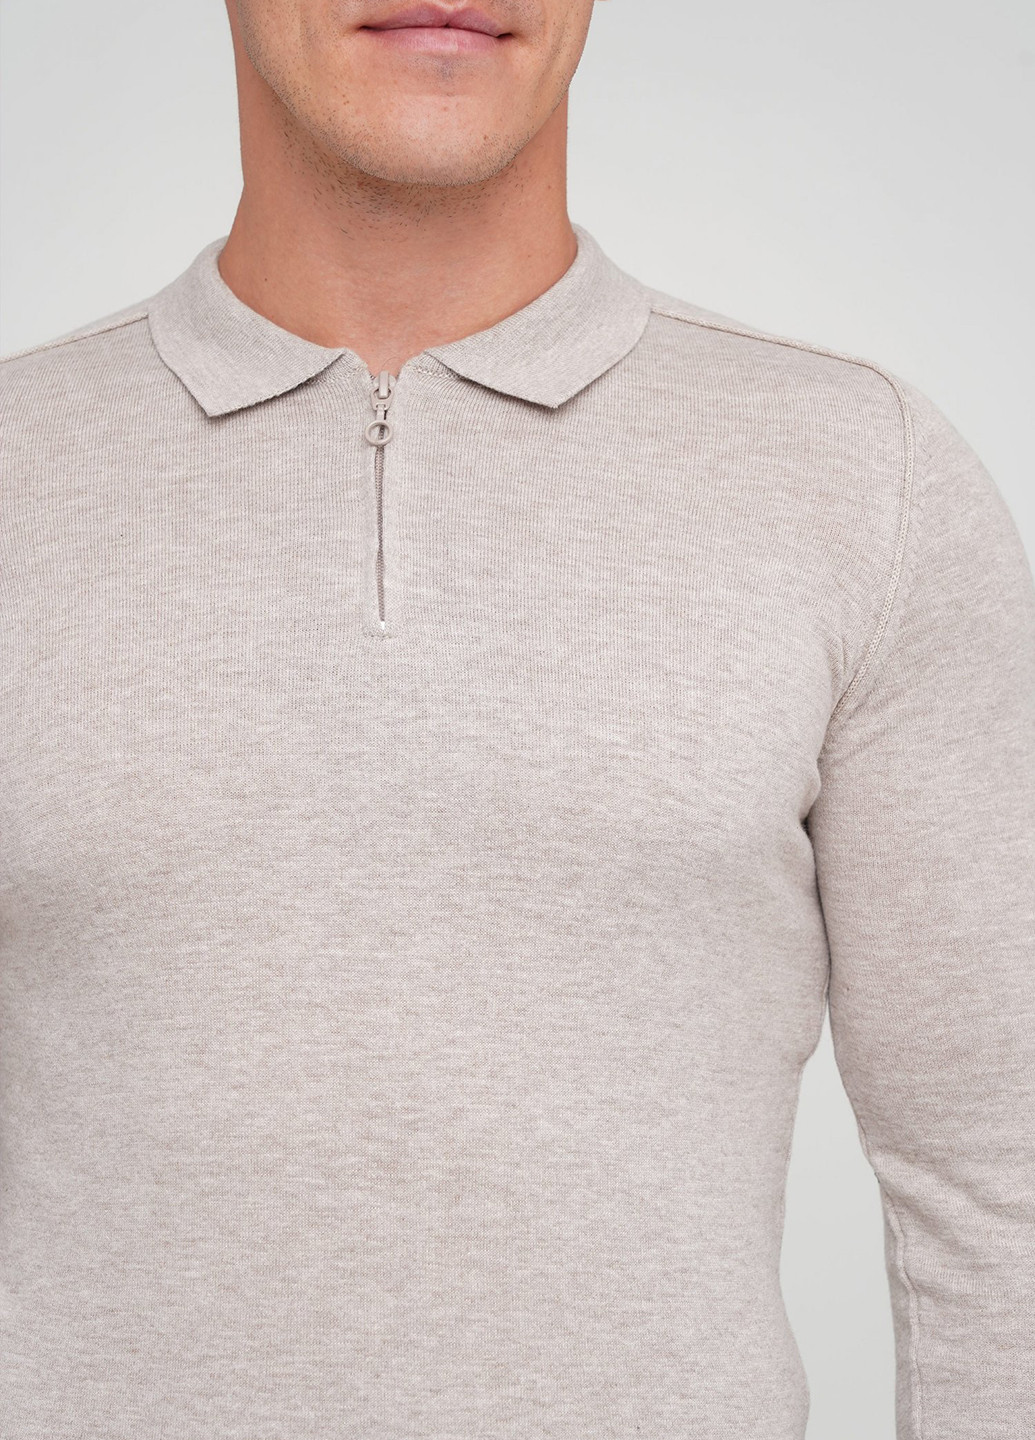 Светло-серая футболка-поло для мужчин Trend Collection меланжевая